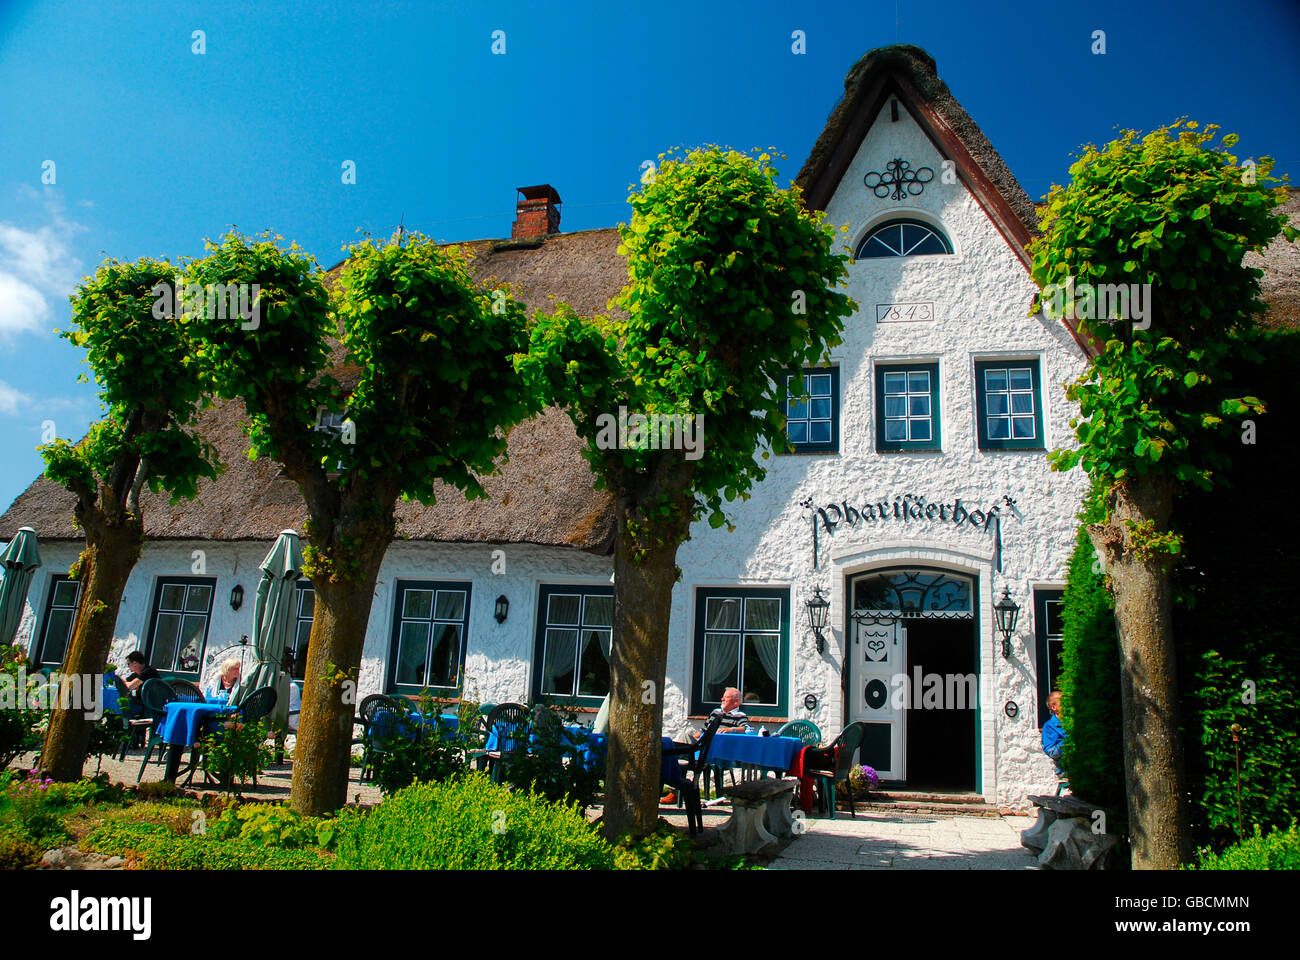 Haus, Gaststaette, Pharisaer, Nordstrand, Nordfriesland, Schleswig-Holstein, Allemagne Banque D'Images